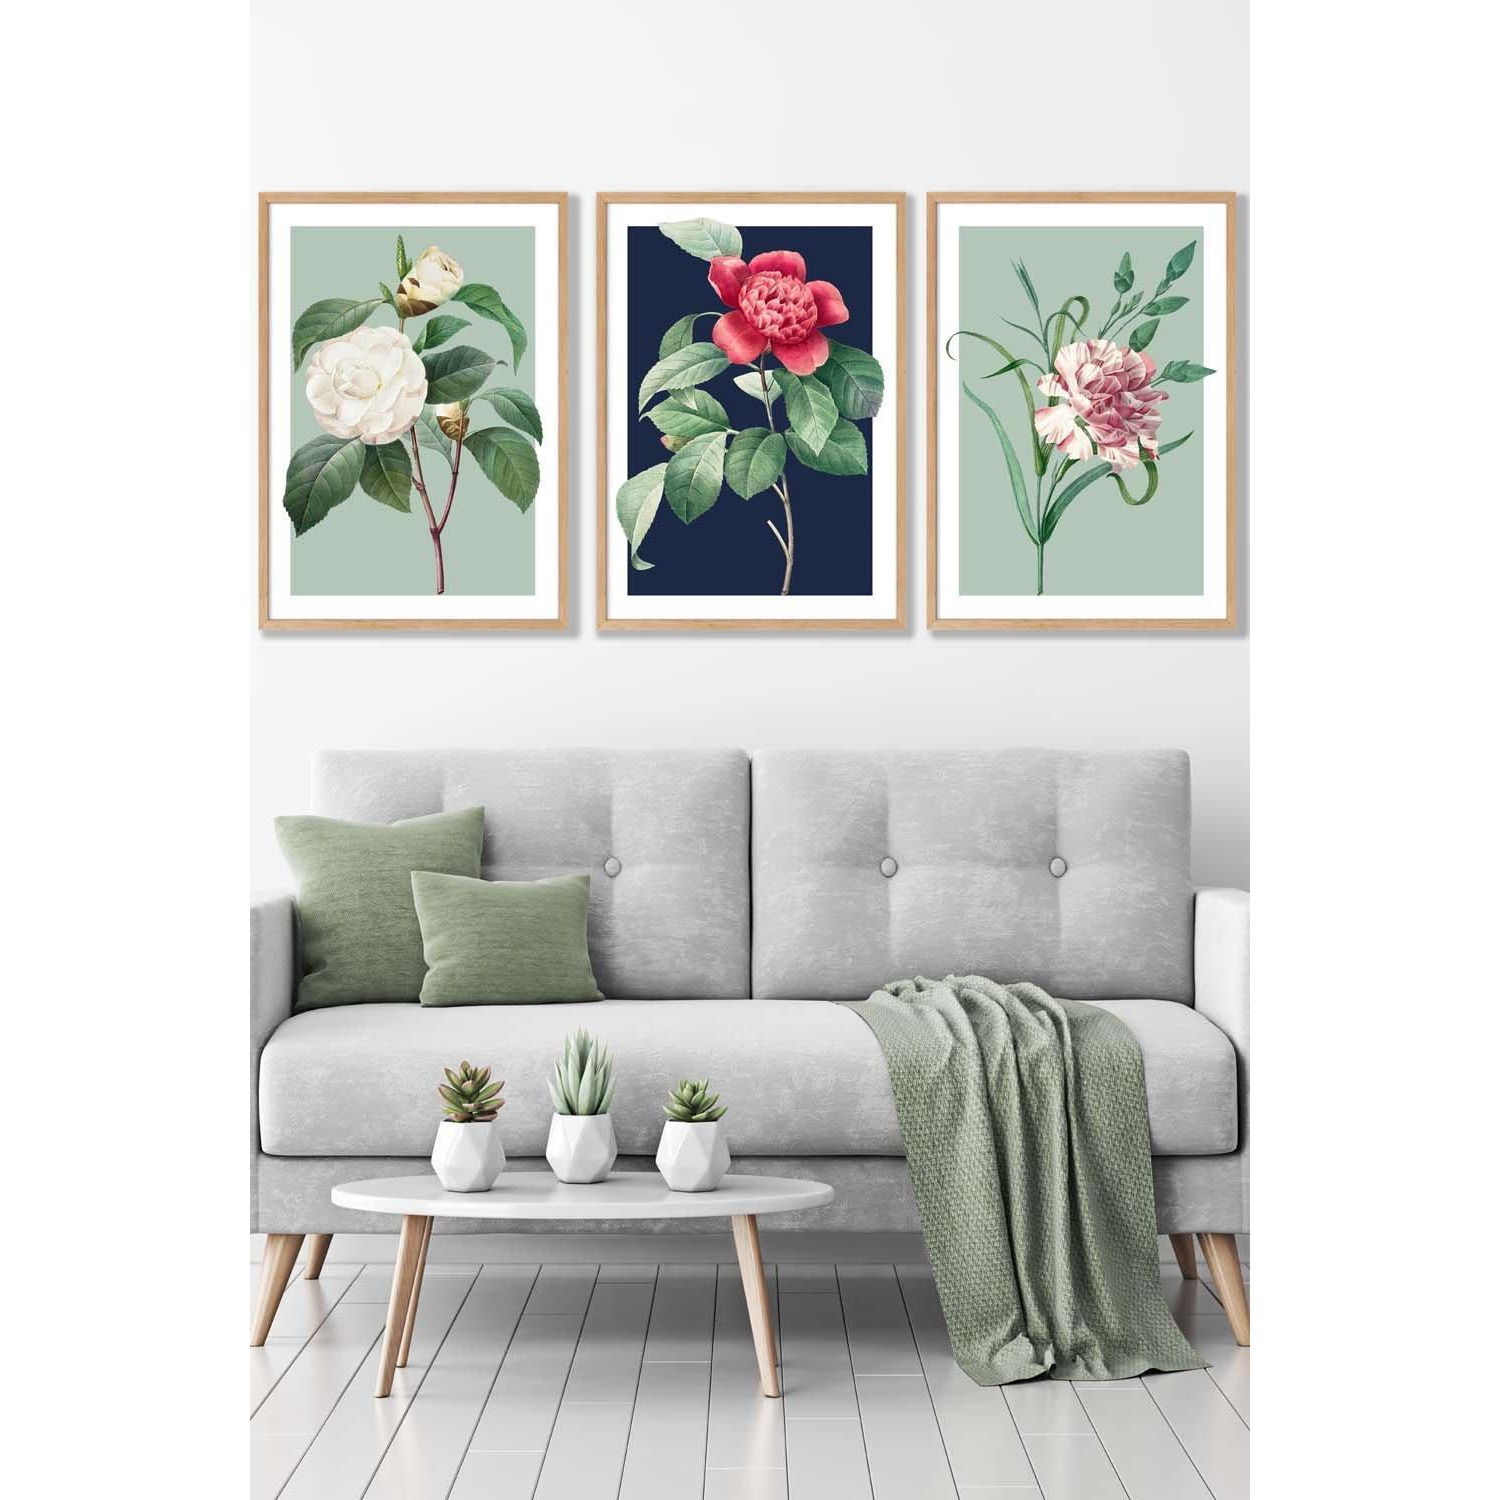 Set of 3 Oak Framed Vintage Flowers Camellia Blue and Green Wall Art - image 1